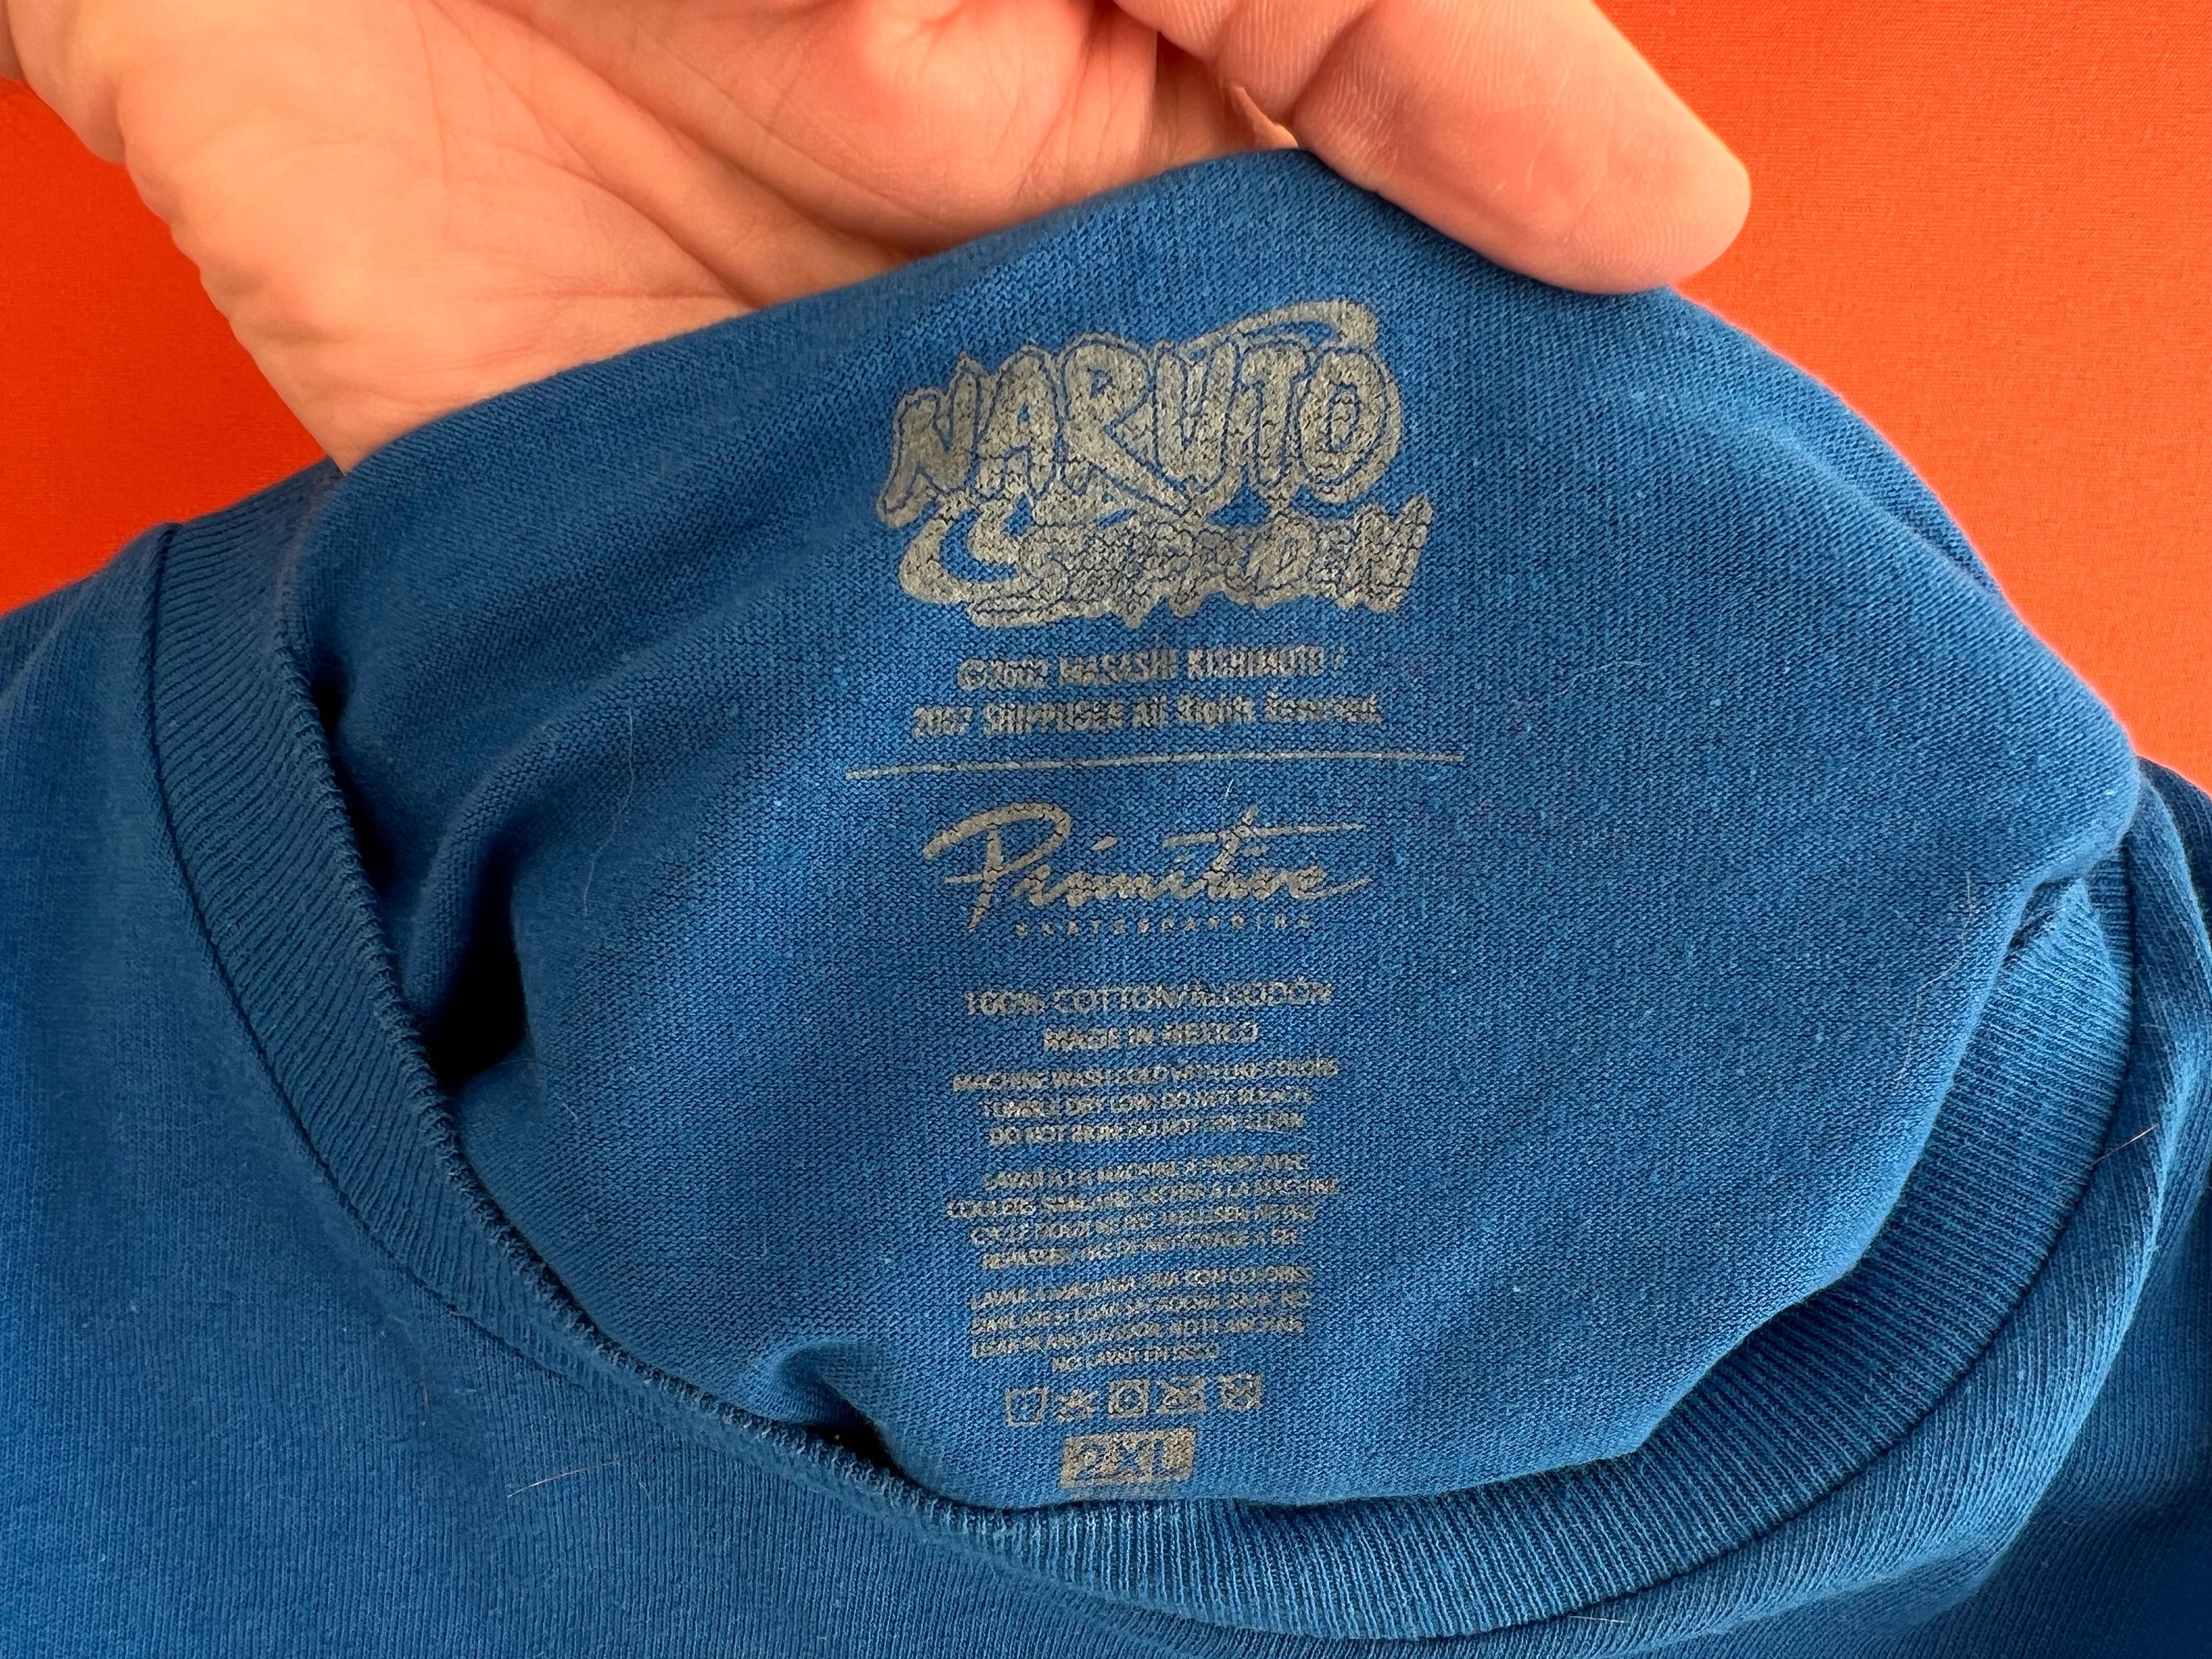 Naruto Shippuden Merch  мужская футболка мерч размер XL XXL Б У